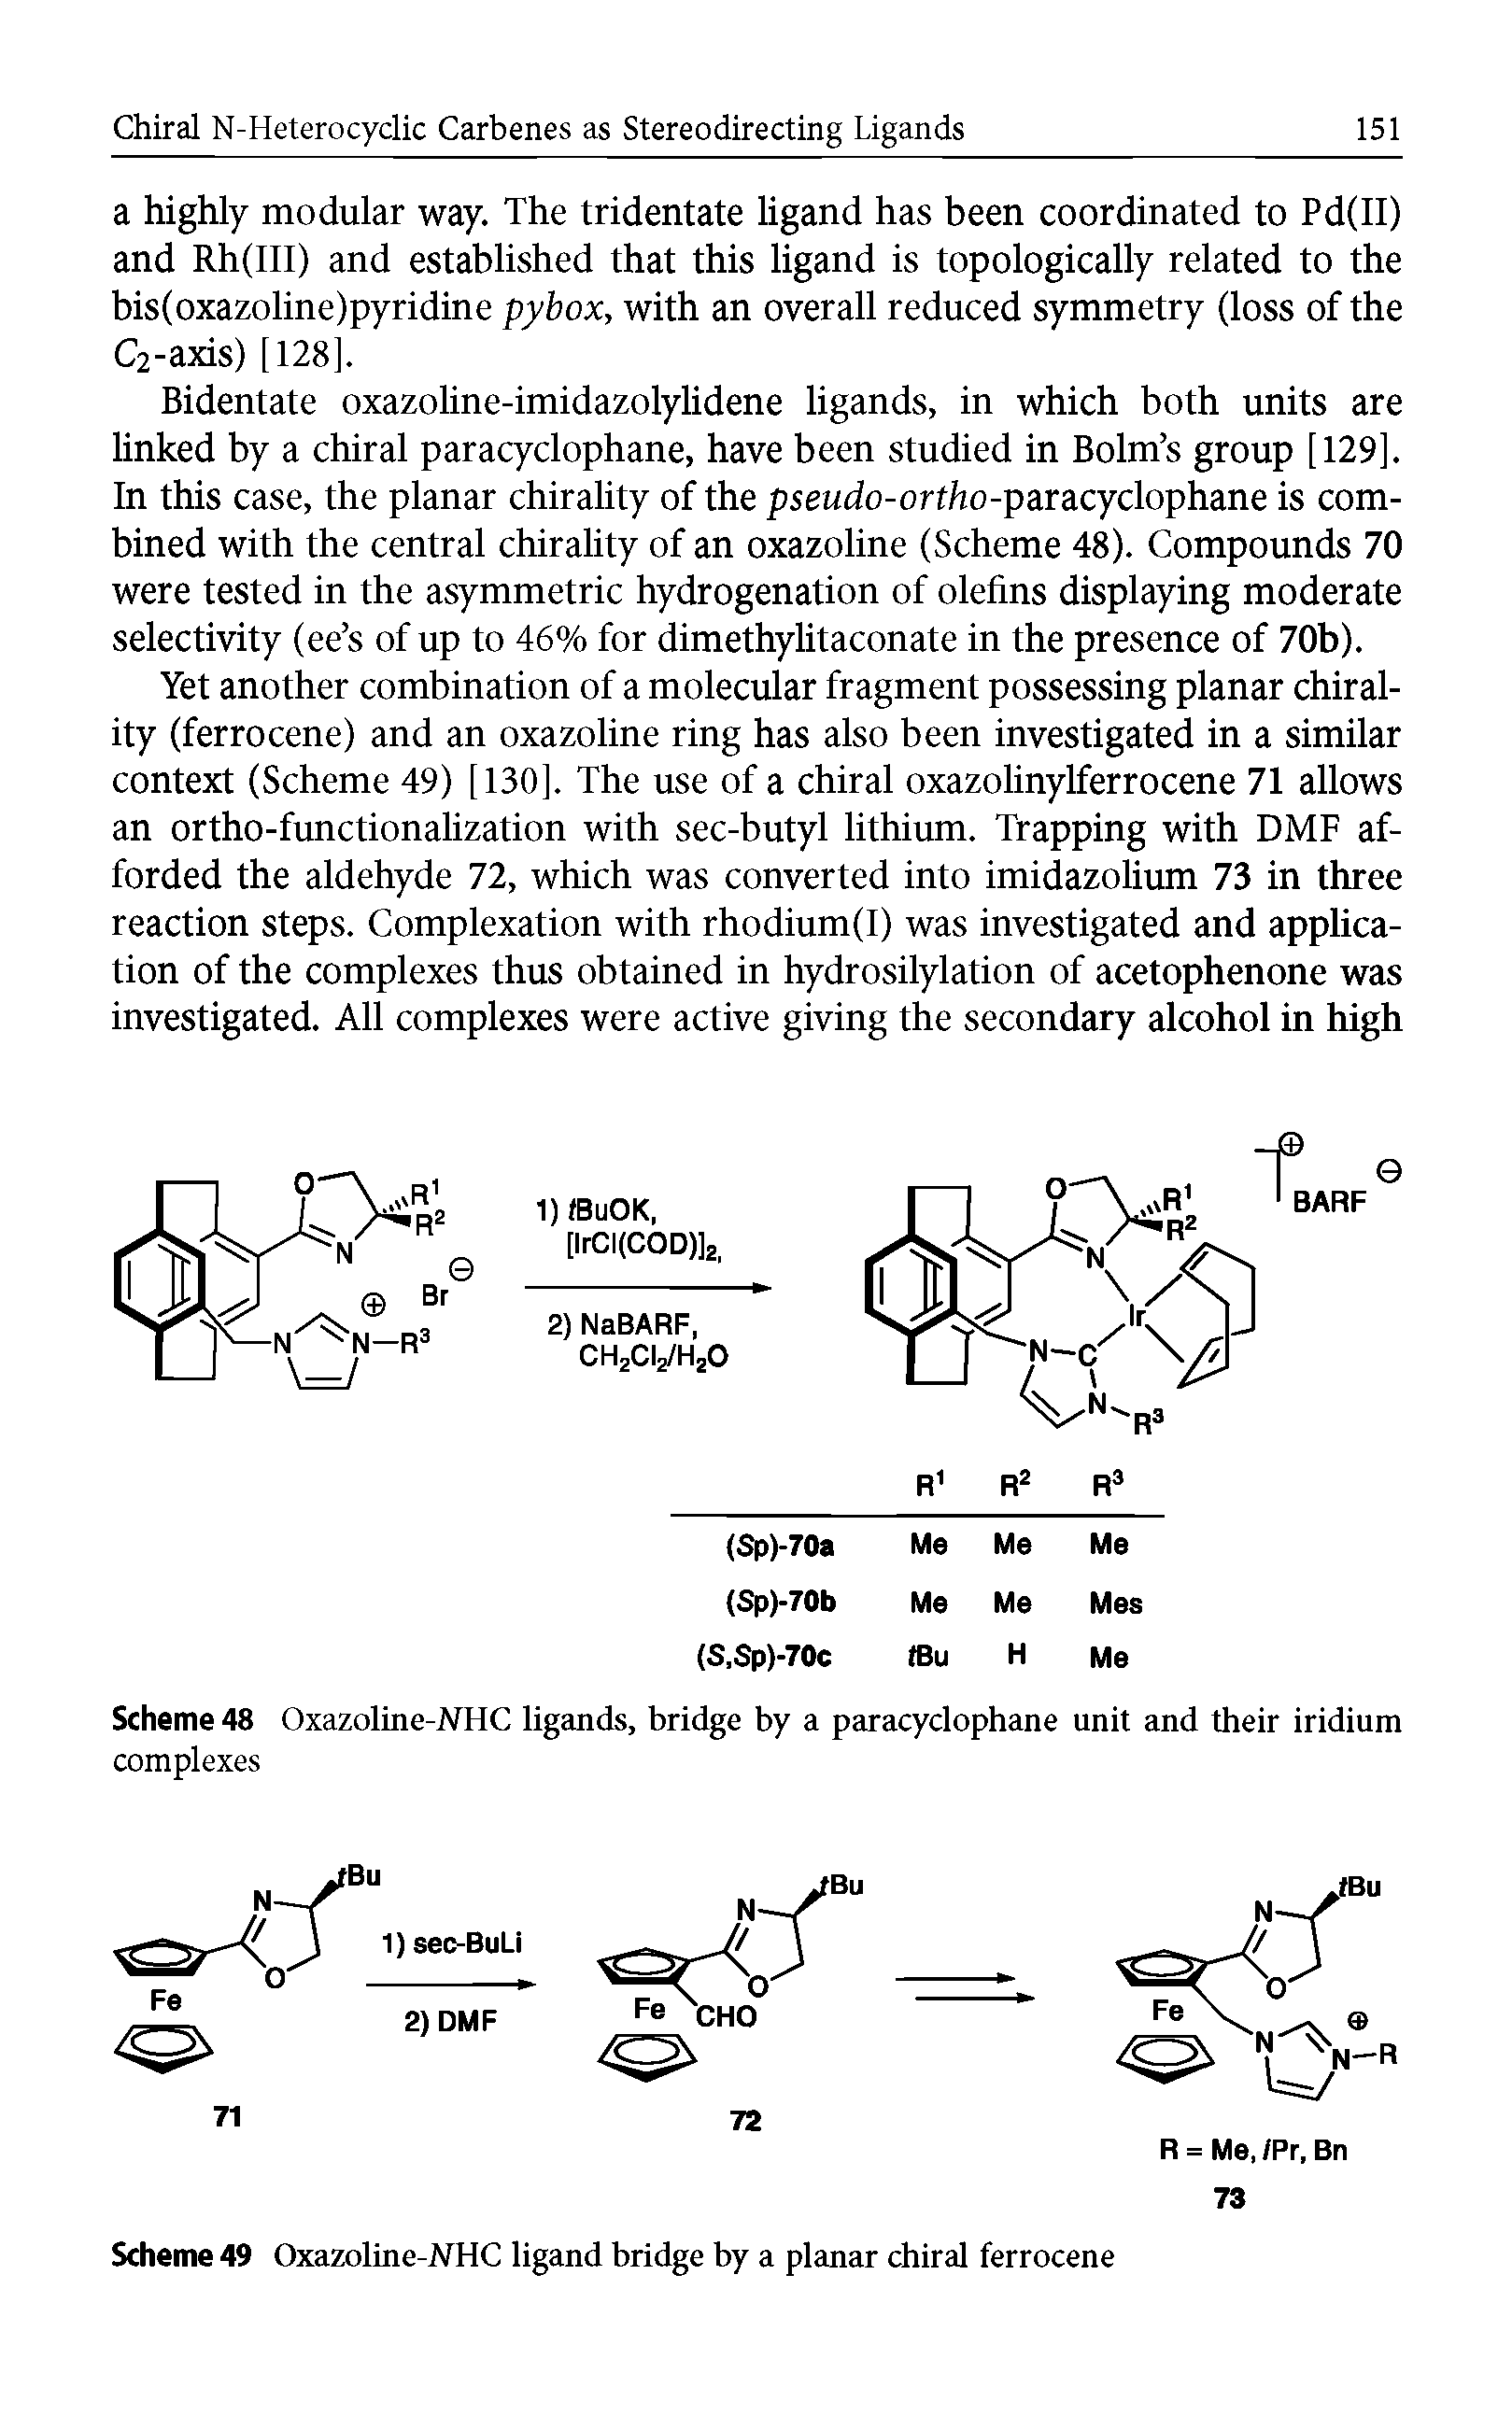 Scheme 49 Oxazoline-NHC ligand bridge by a planar chiral ferrocene...